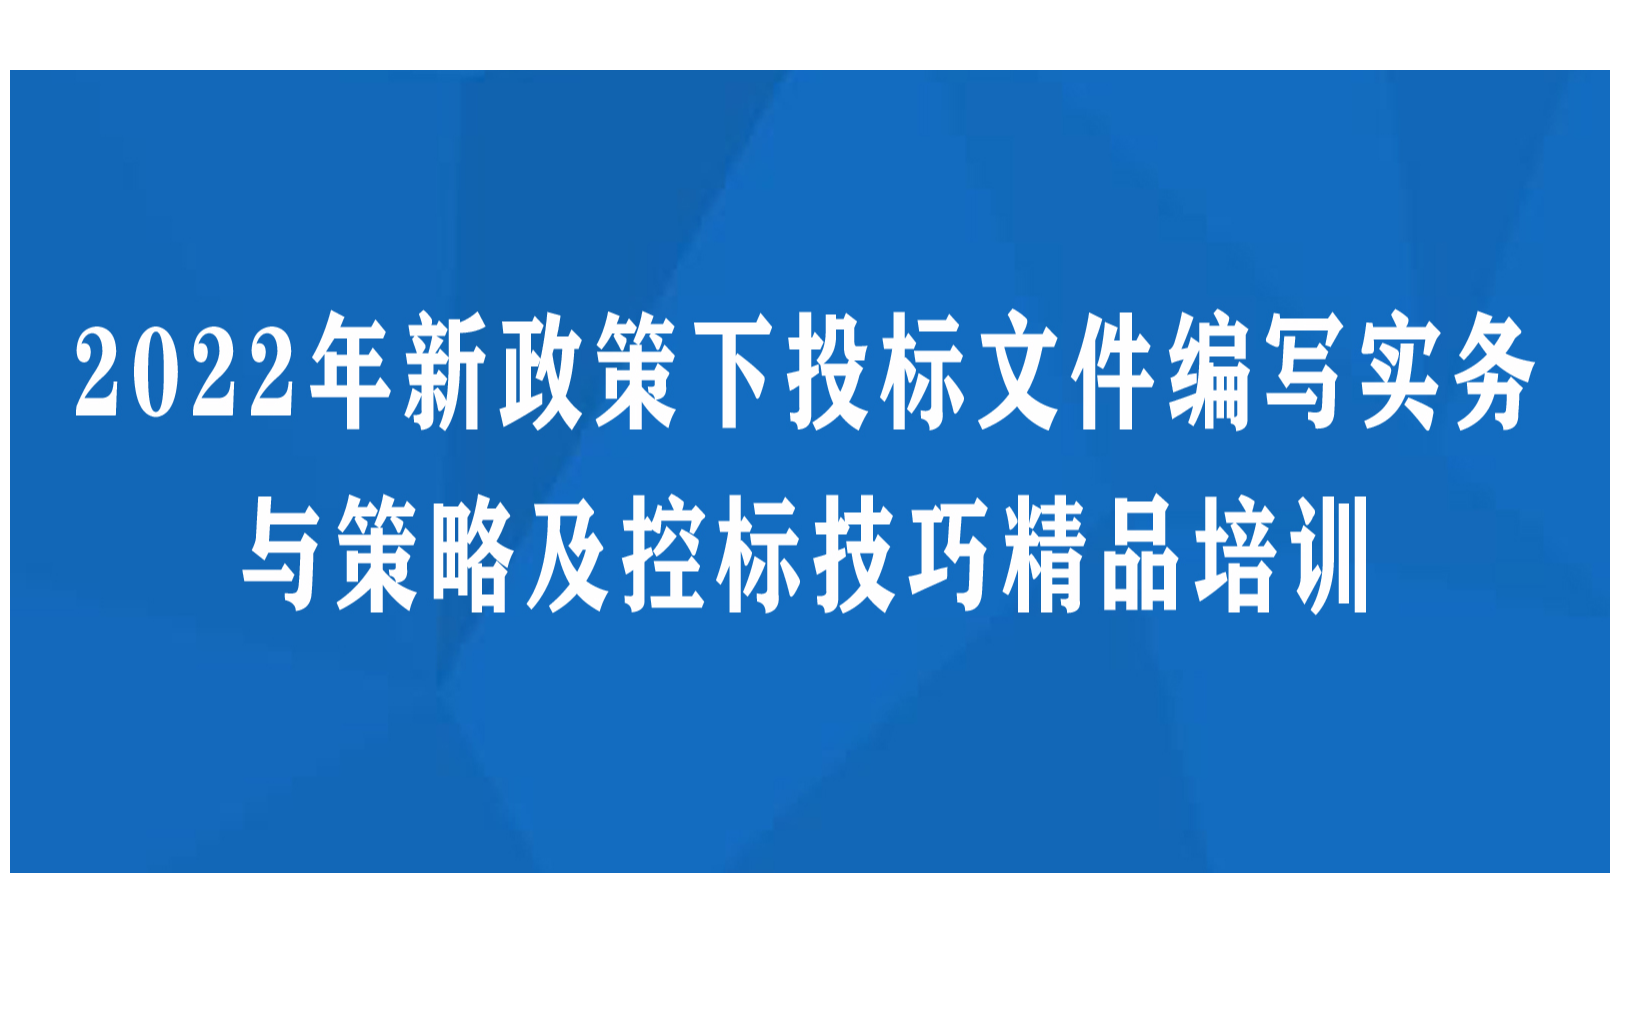 2021年5月26日-高教司吴岩司长-哈尔滨会议报告课件-中国高等教育的新判、新任务、新体系、新基建_文库-报告厅